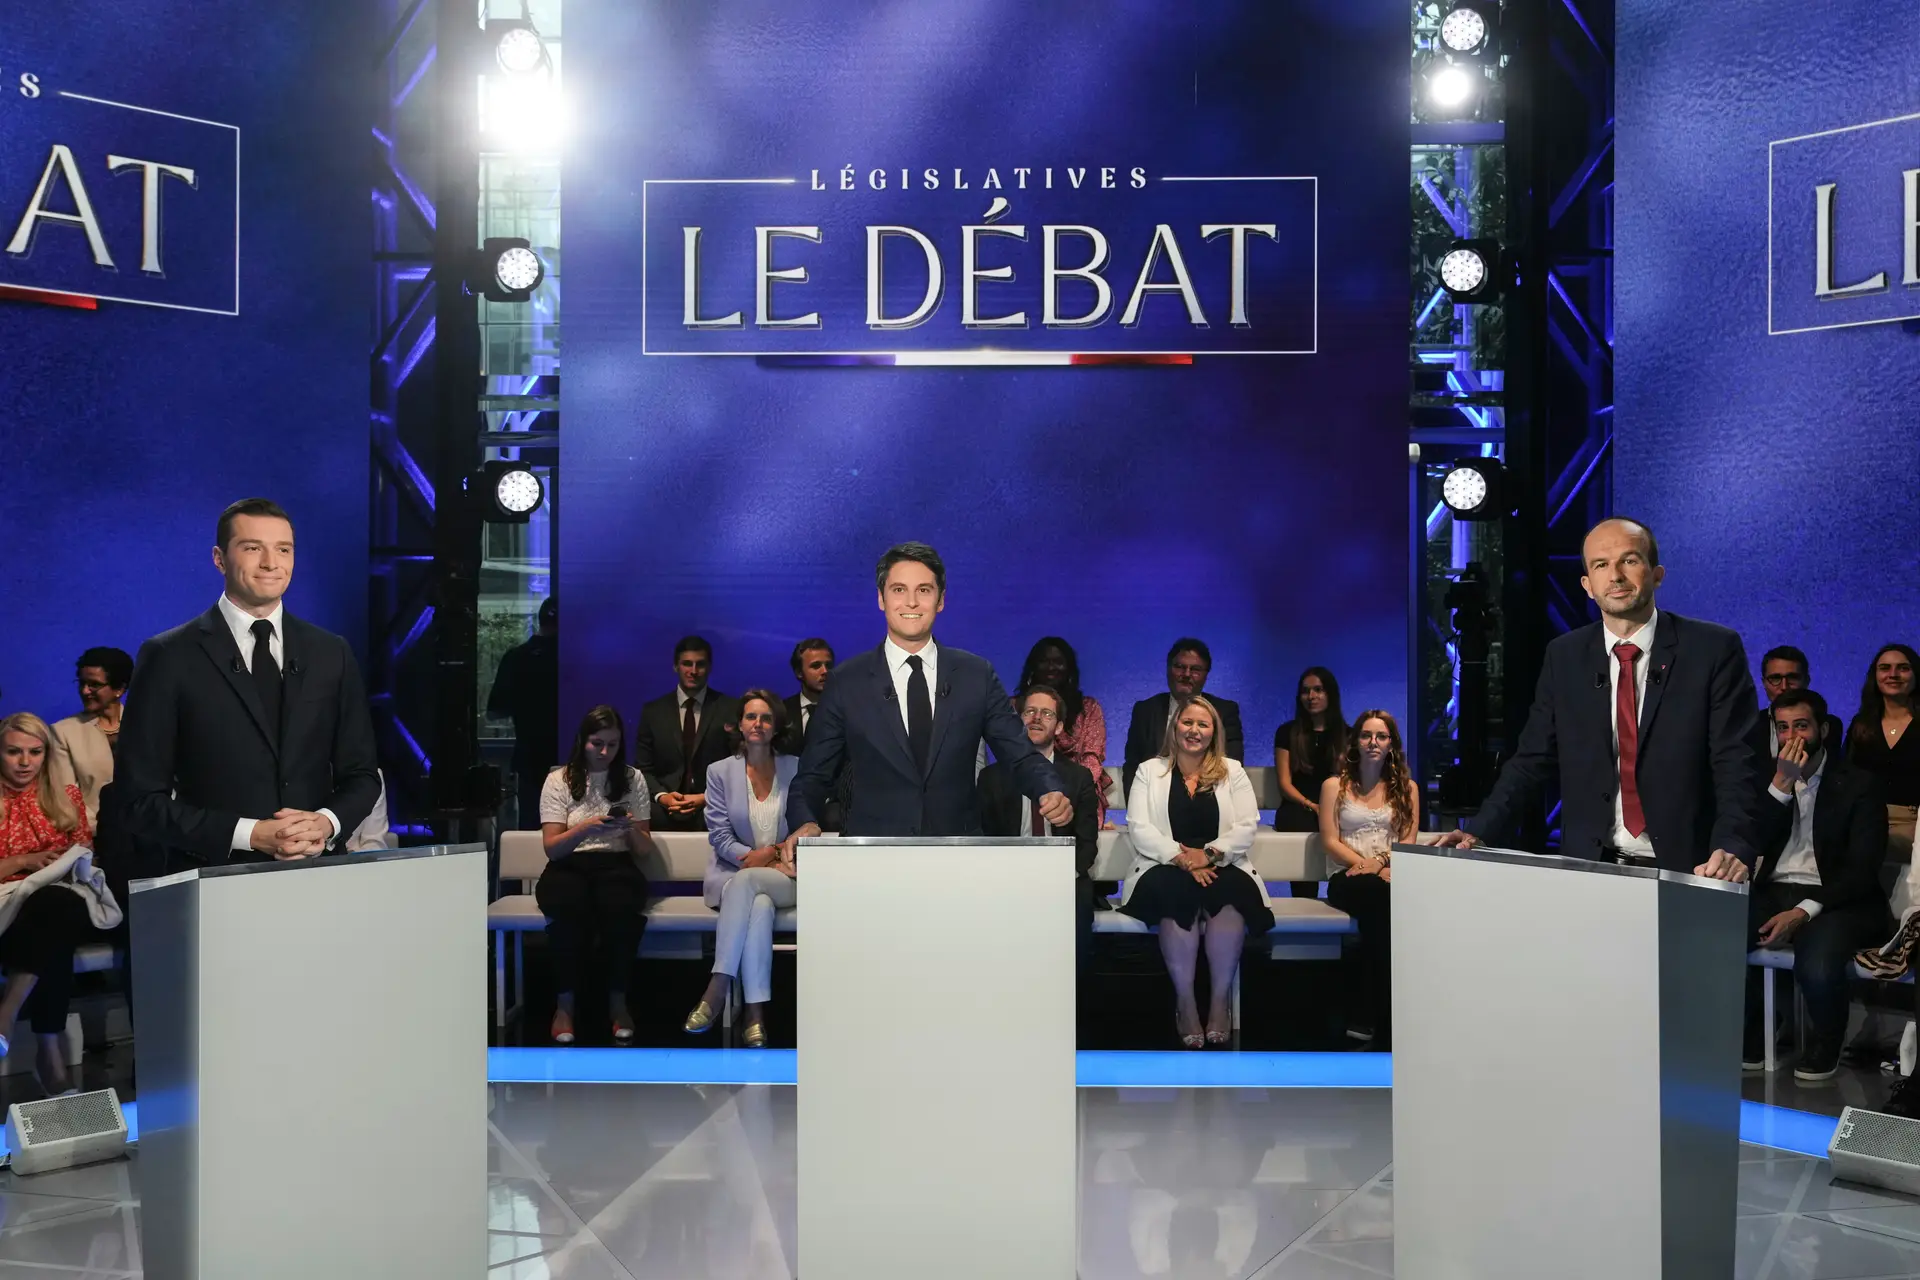 Eleições em França: um resumo do 1º debate (sem consenso entre candidatos)